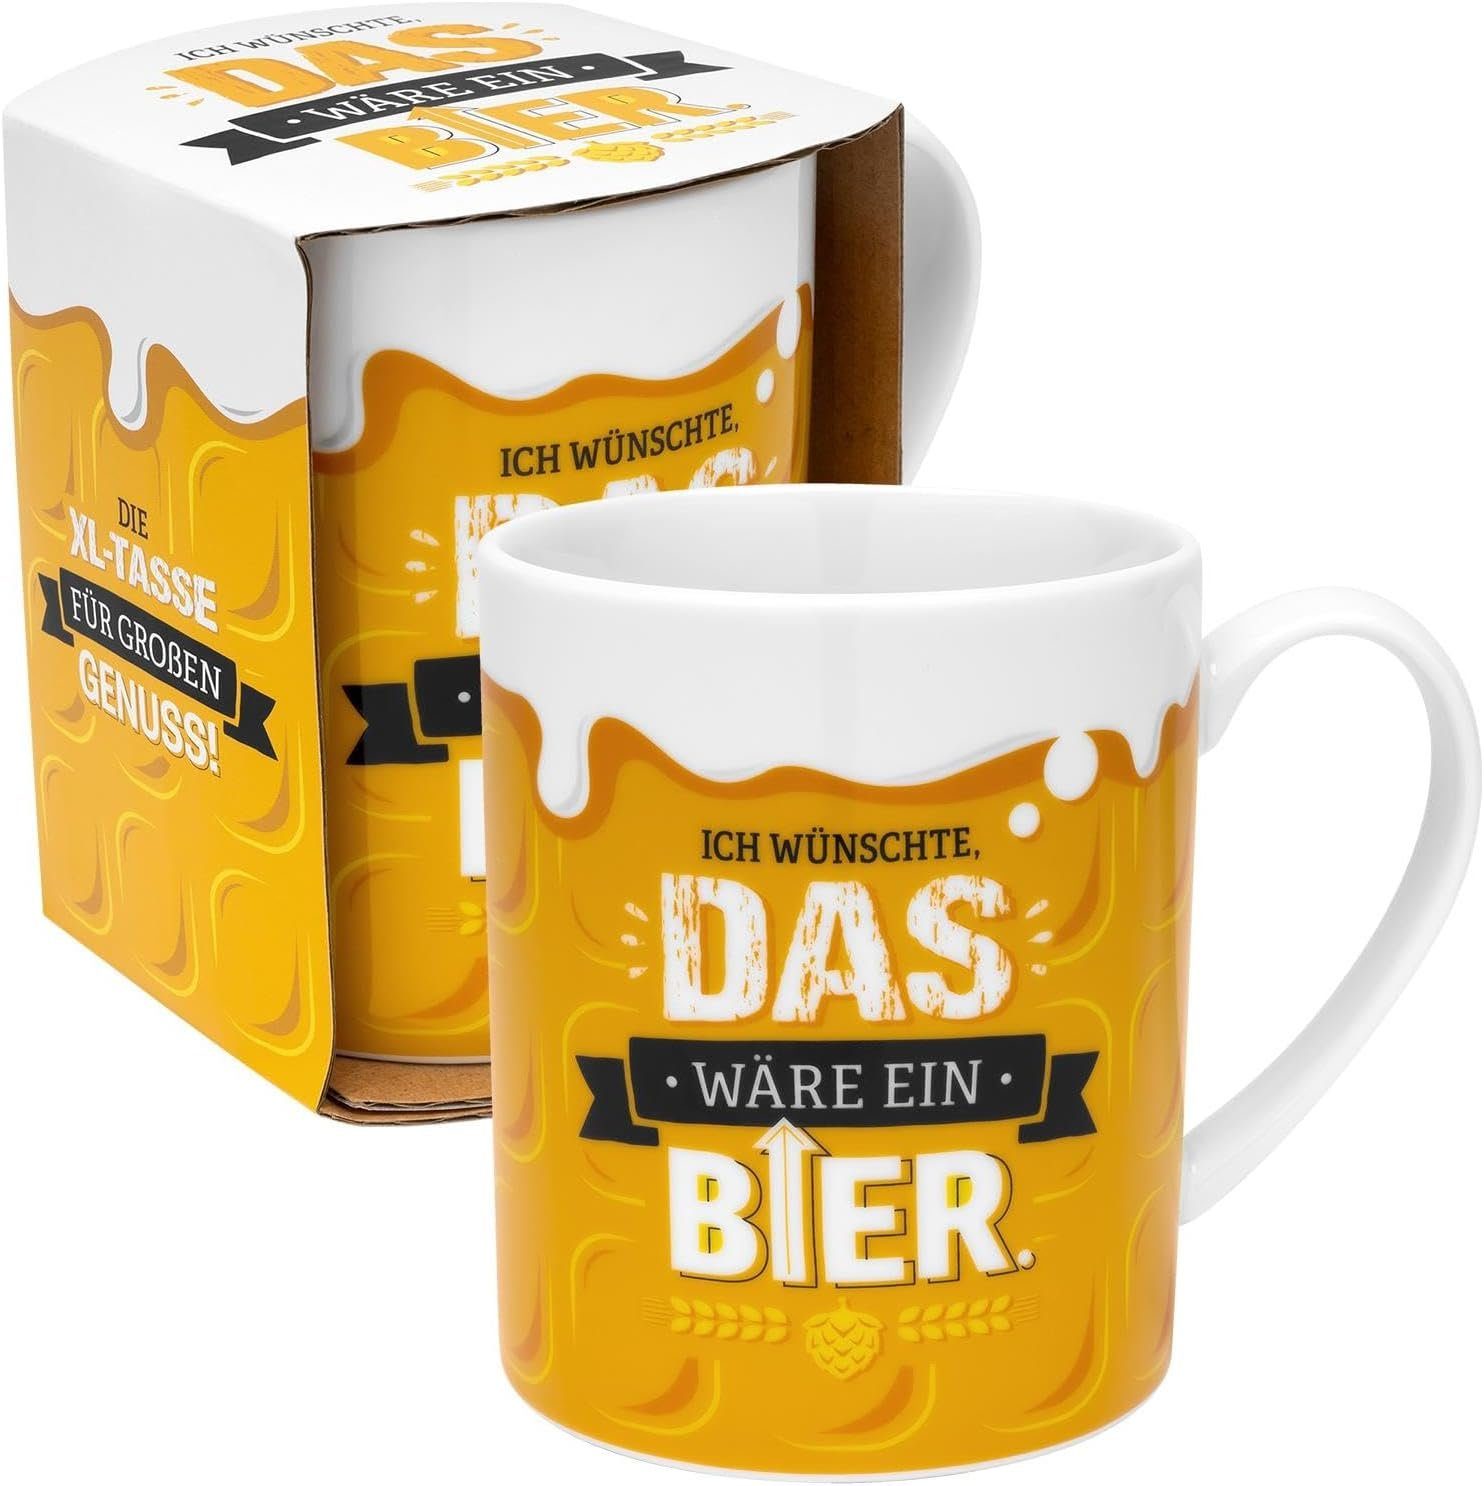 Sheepworld Tasse Kaffeetasse Kaffee Bier Sheepworld 60cl Tee 48813 XL-Tasse Material: & Porzellan Gruss Co, Becher